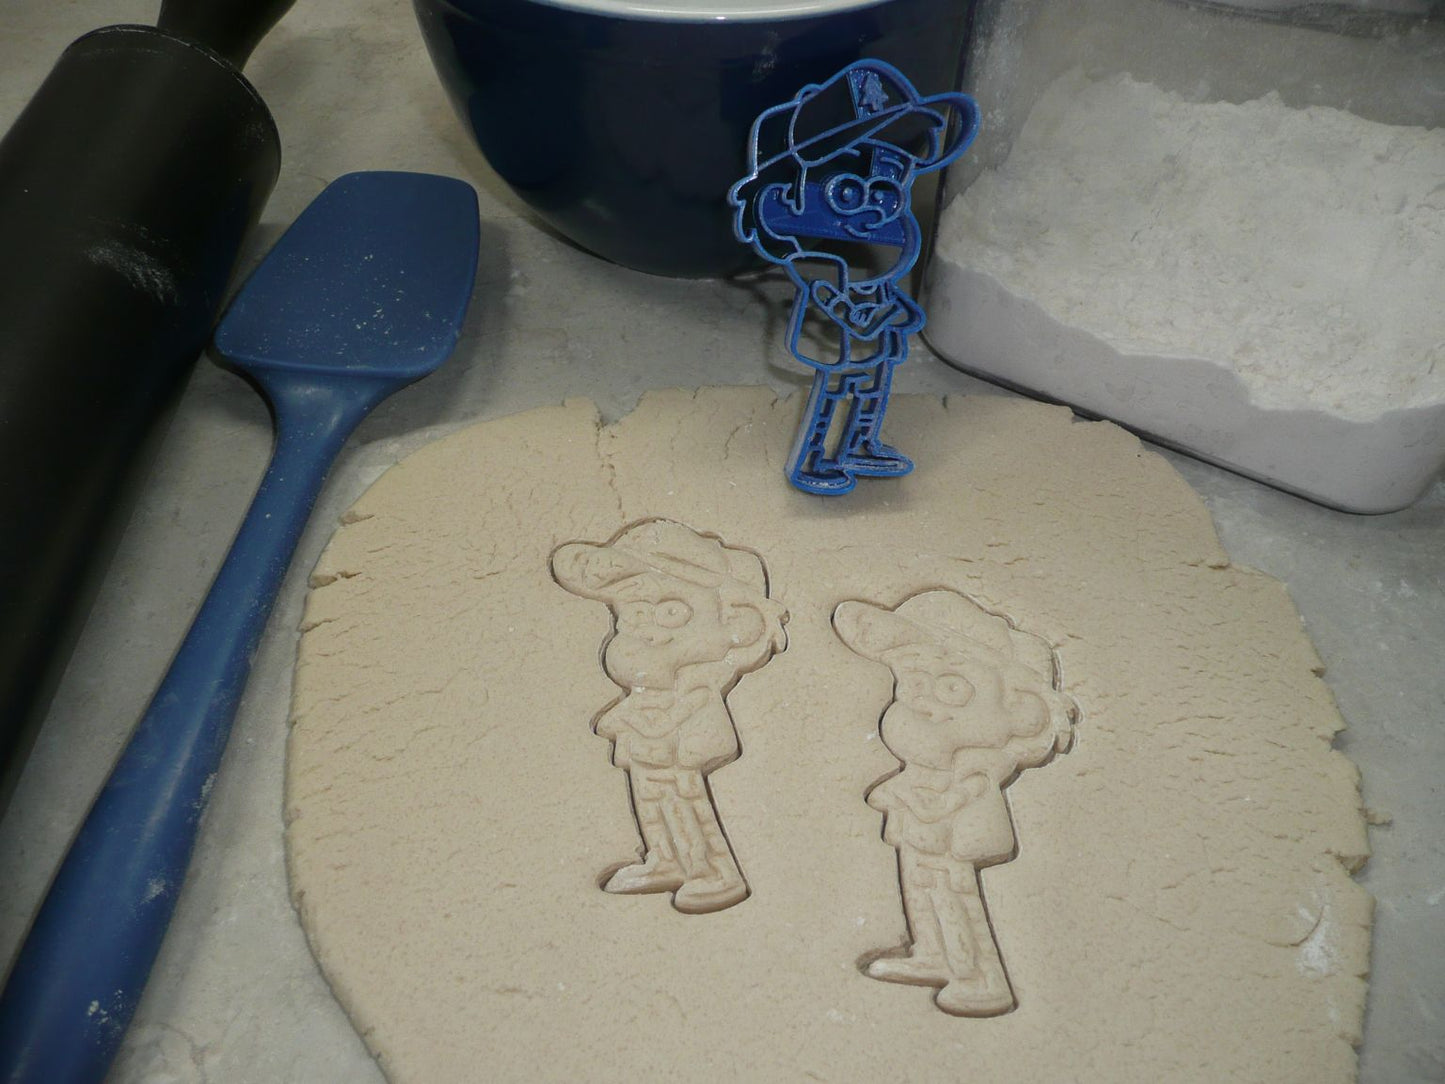 Dipper Pines Gravity Falls Disney Cartoon Character Cookie Cutter USA PR642